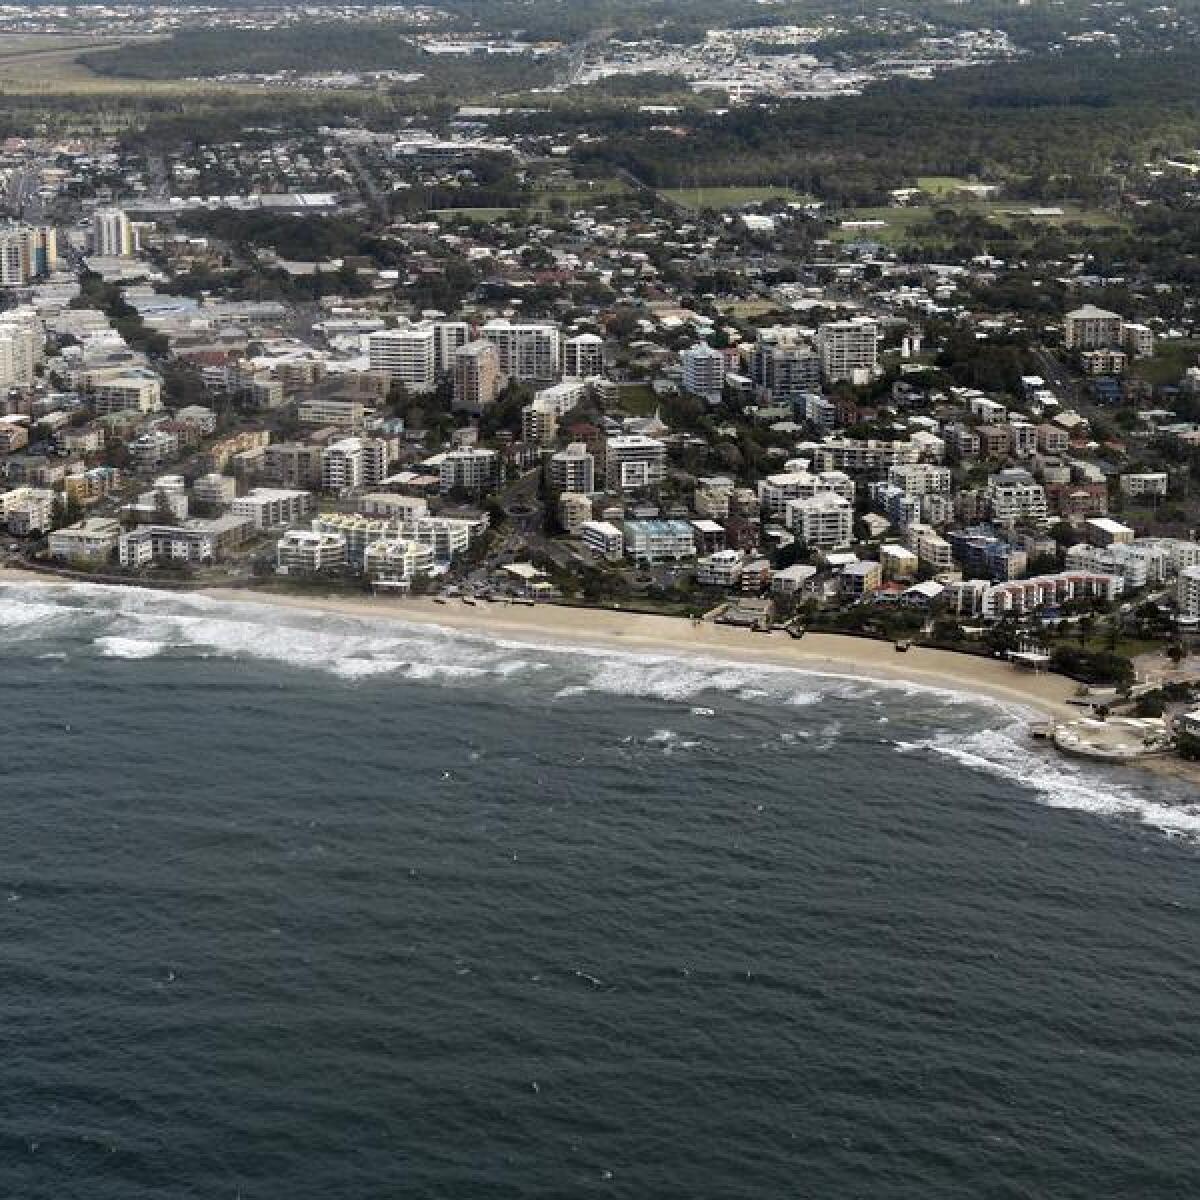 An aerial view of Caloundra, Sunshine Coast